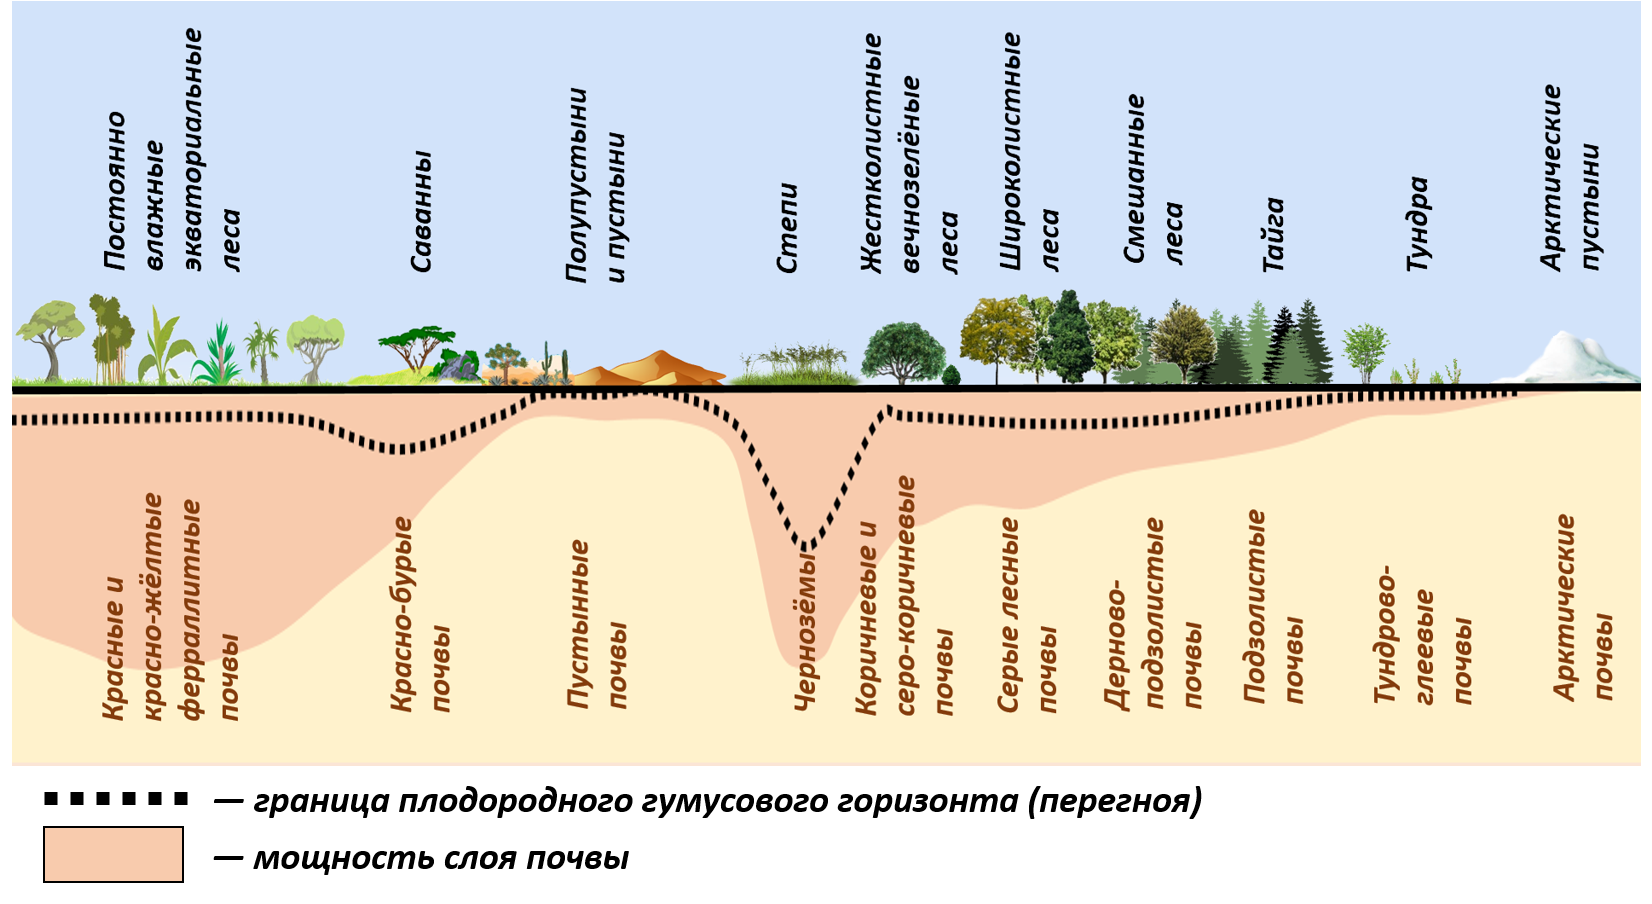 Основные особенности ландшафтов. Распределение почв по природным зонам. Зональное распределение почв. Основные зональные типы почв России. Распространение типов почв.